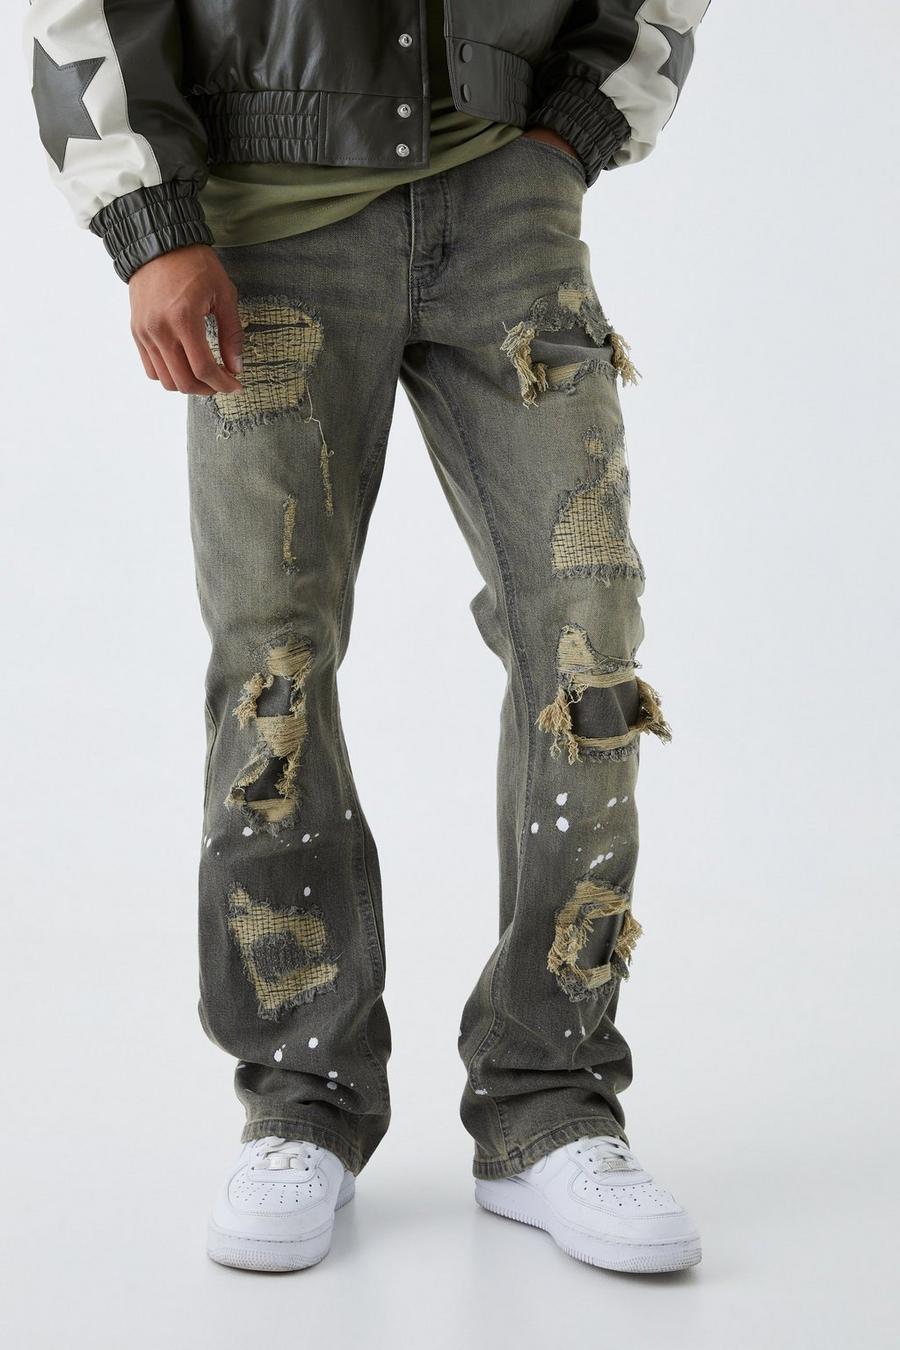 Jeans Slim Fit in denim rigido candeggiati con strappi & rattoppi, Grey grigio